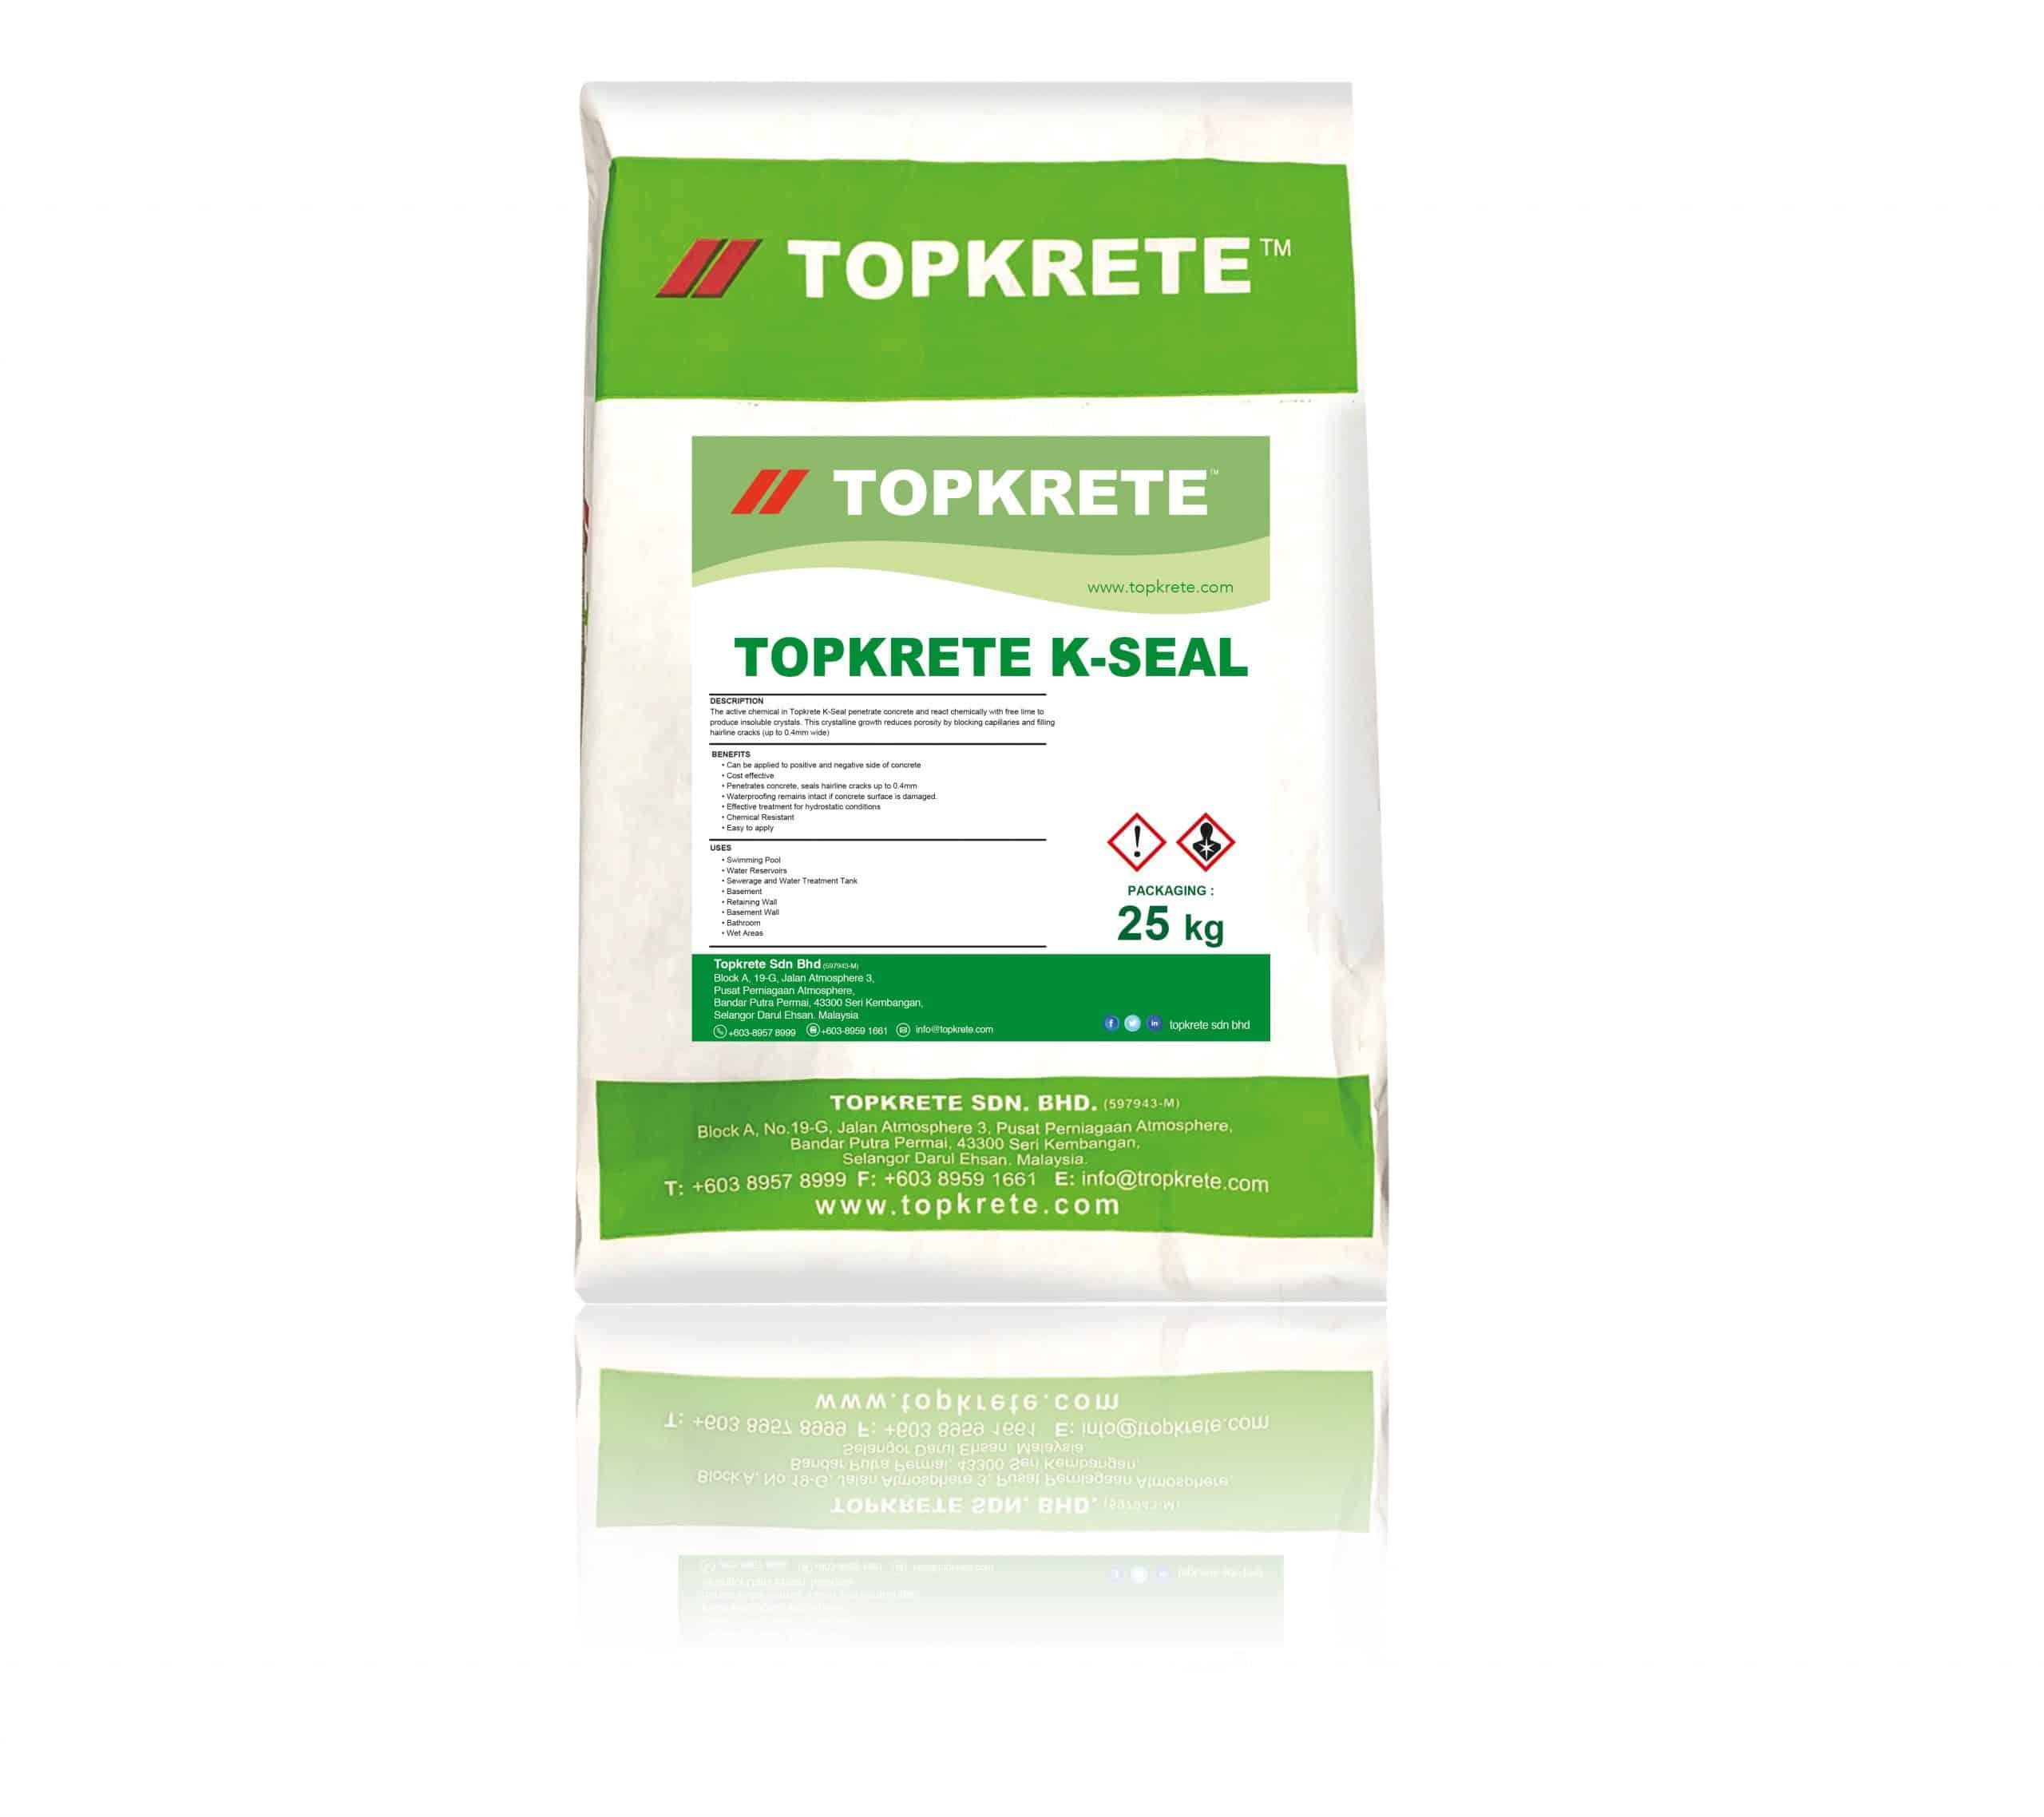 Product TOPKRETE K-SEAL - Topkrete image